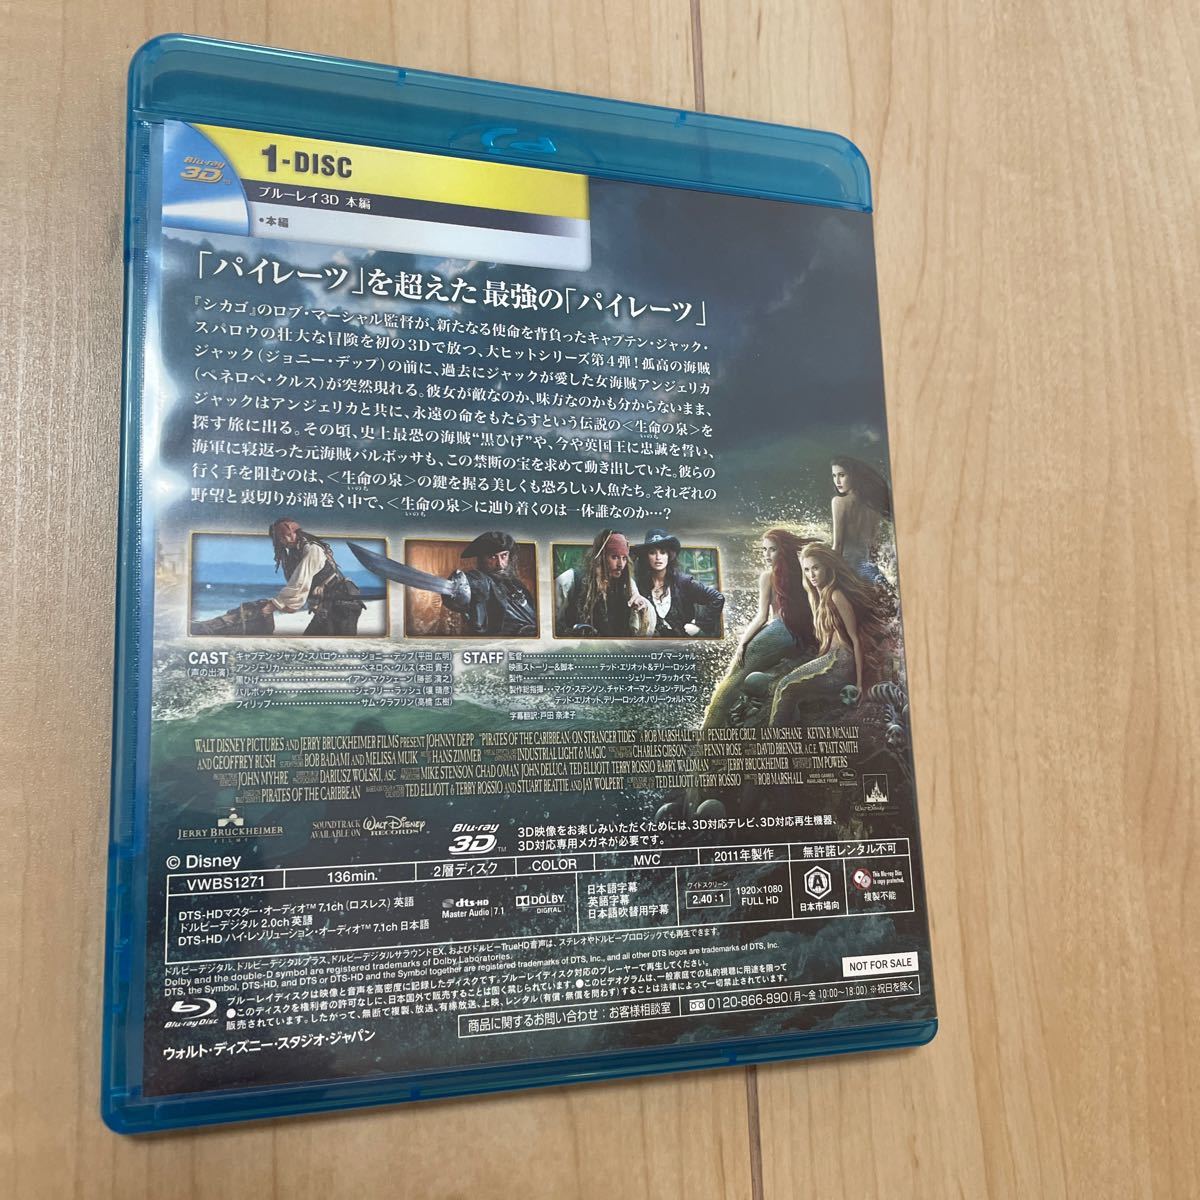 パイレーツオブカリビアン 生命の泉 Blu-ray 3D